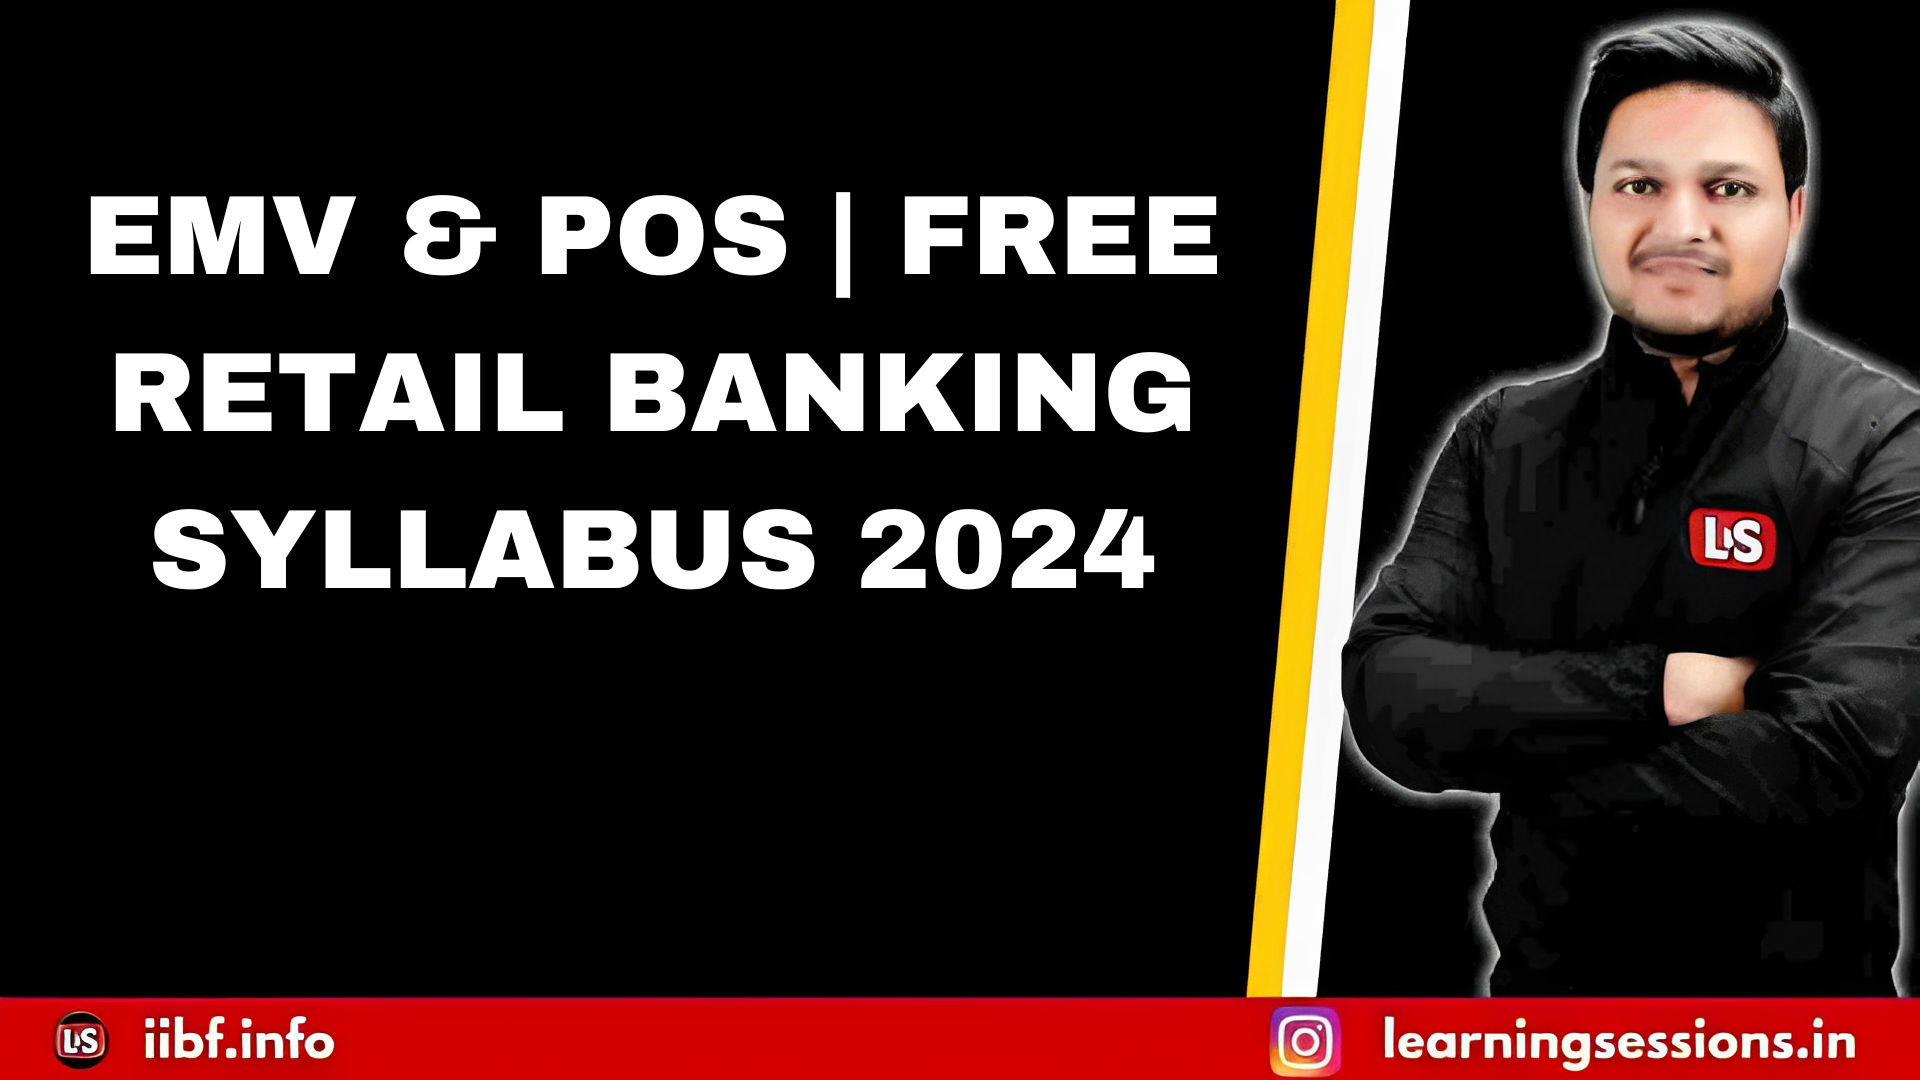 EMV & POS | FREE RETAIL BANKING SYLLABUS